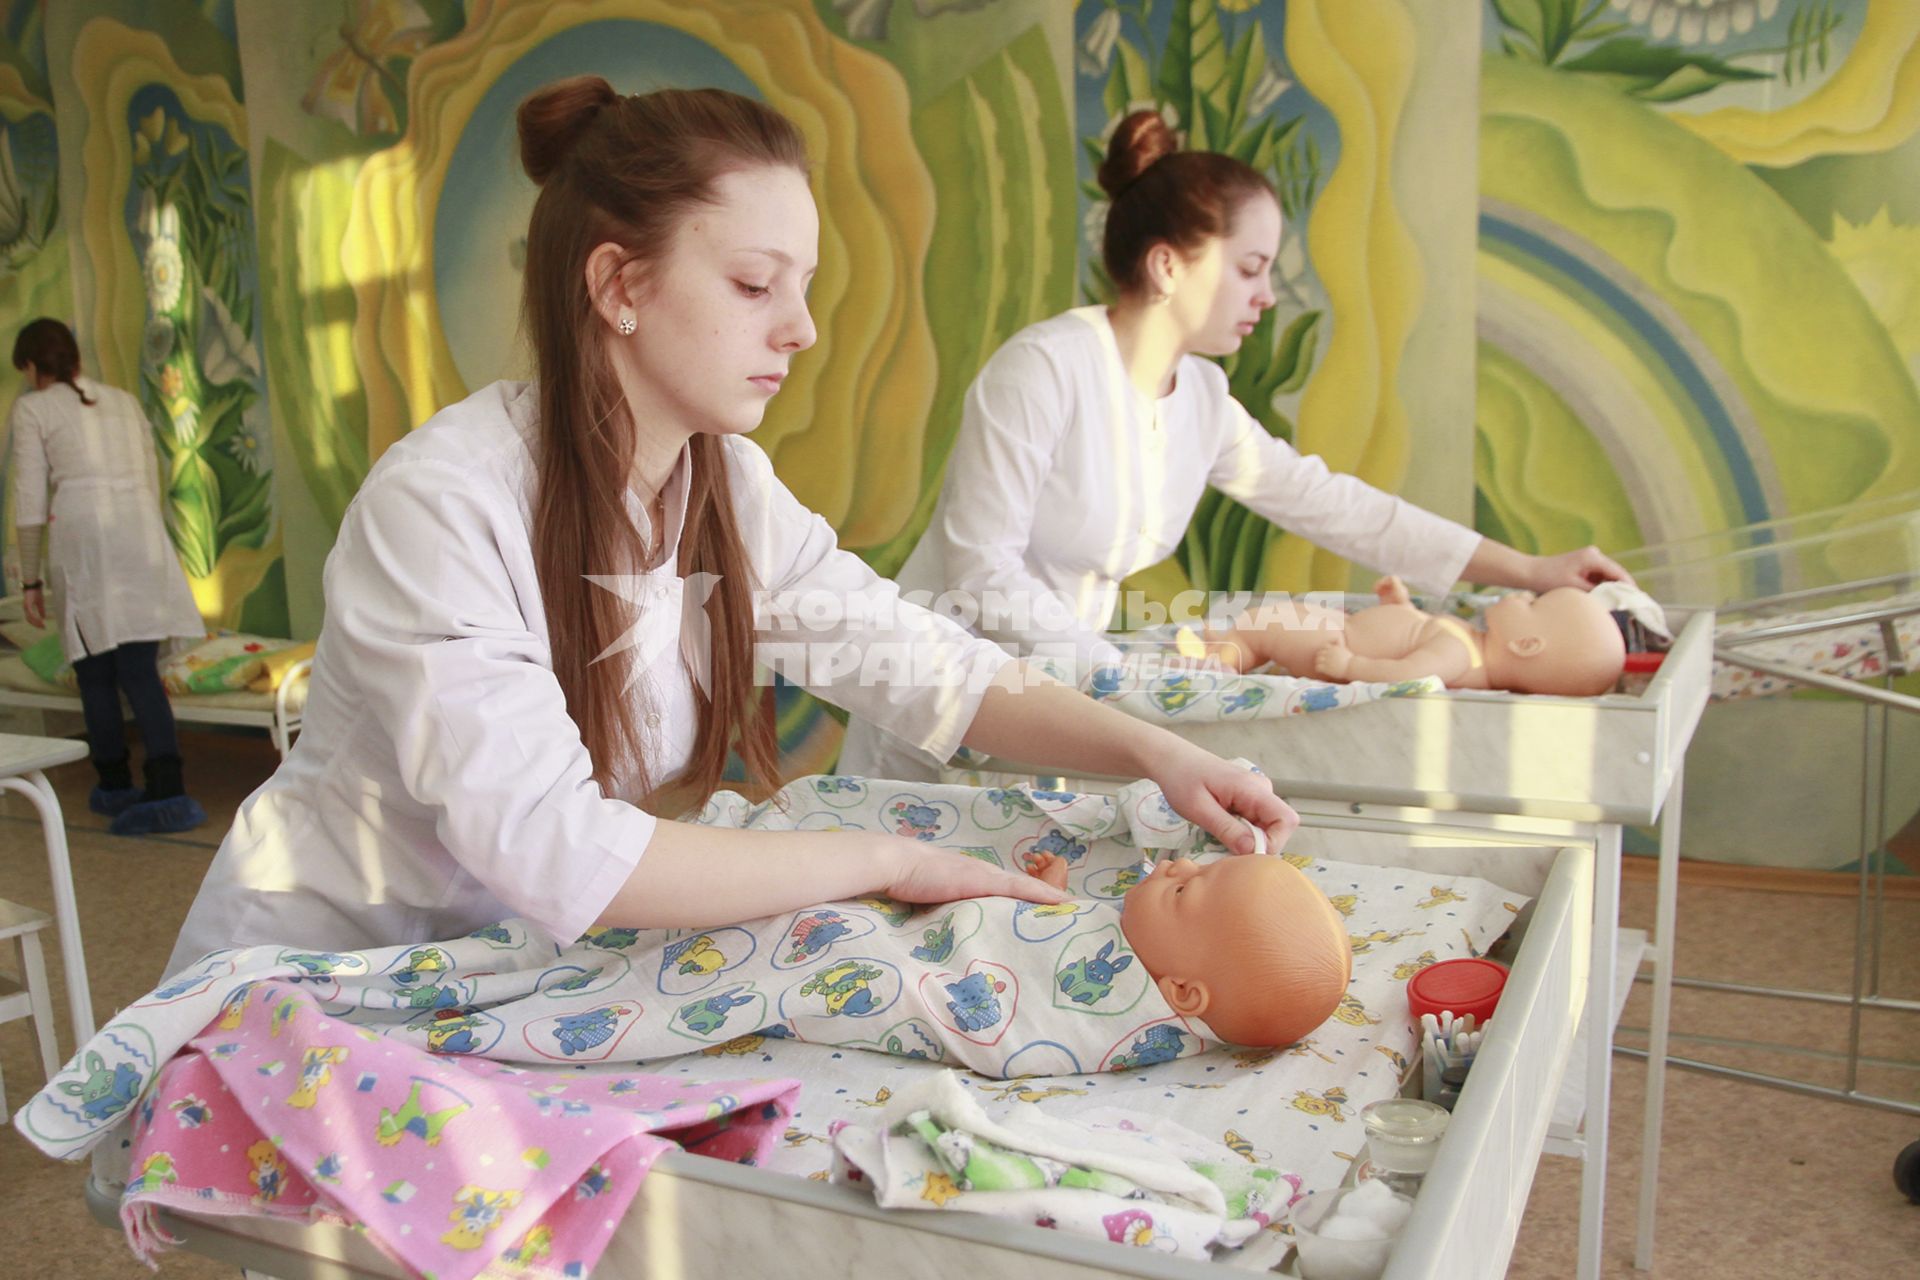 Барнаул. Студентки медицинского колледжа на практических занятиях по аккушерству.